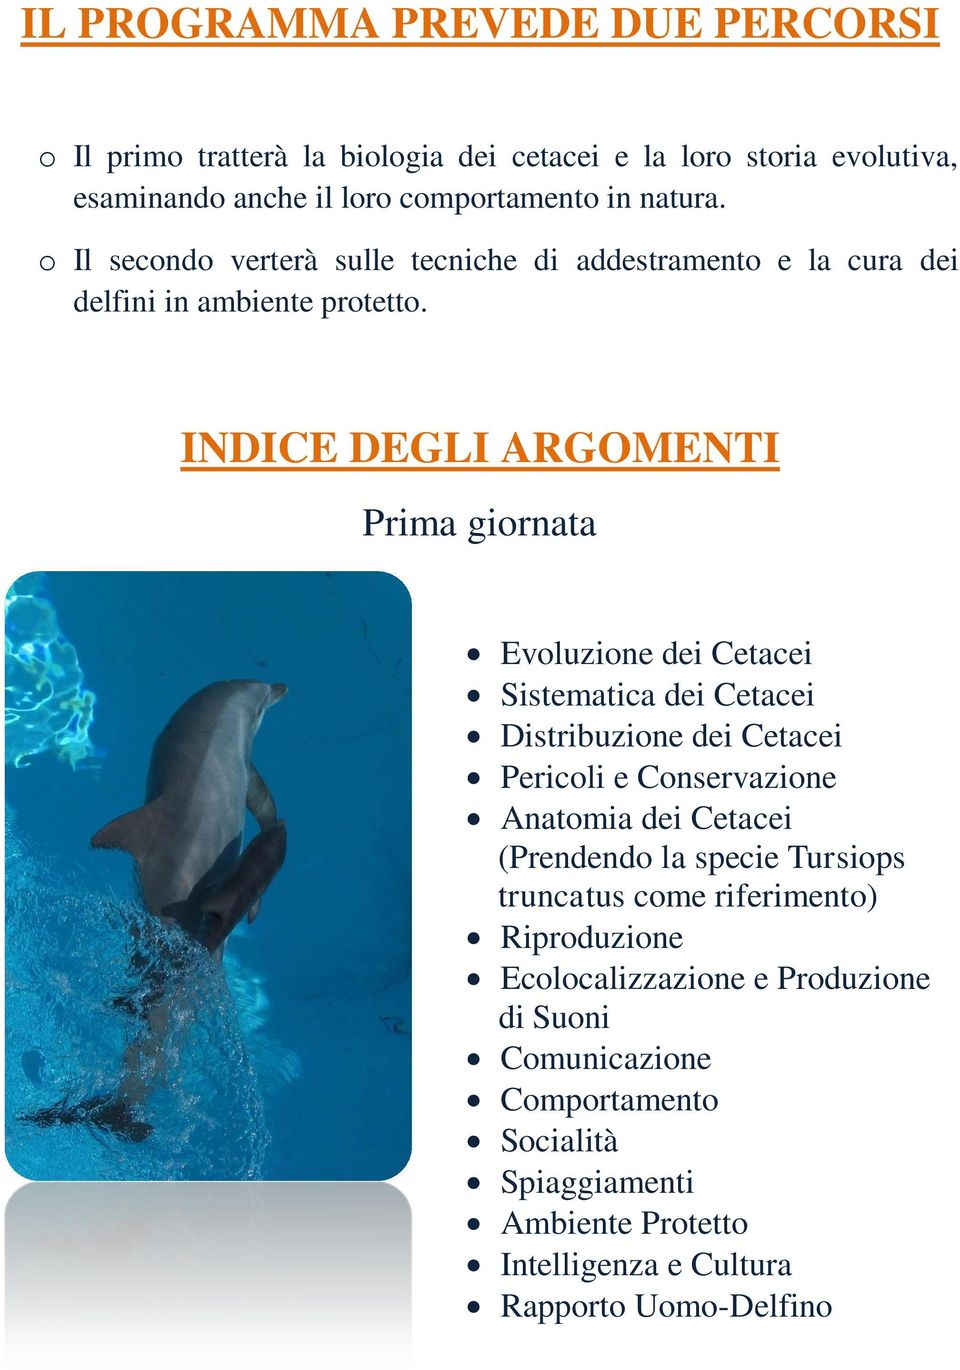 INDICE DEGLI ARGOMENTI Prima giornata Evoluzione dei Cetacei Sistematica dei Cetacei Distribuzione dei Cetacei Pericoli e Conservazione Anatomia dei Cetacei